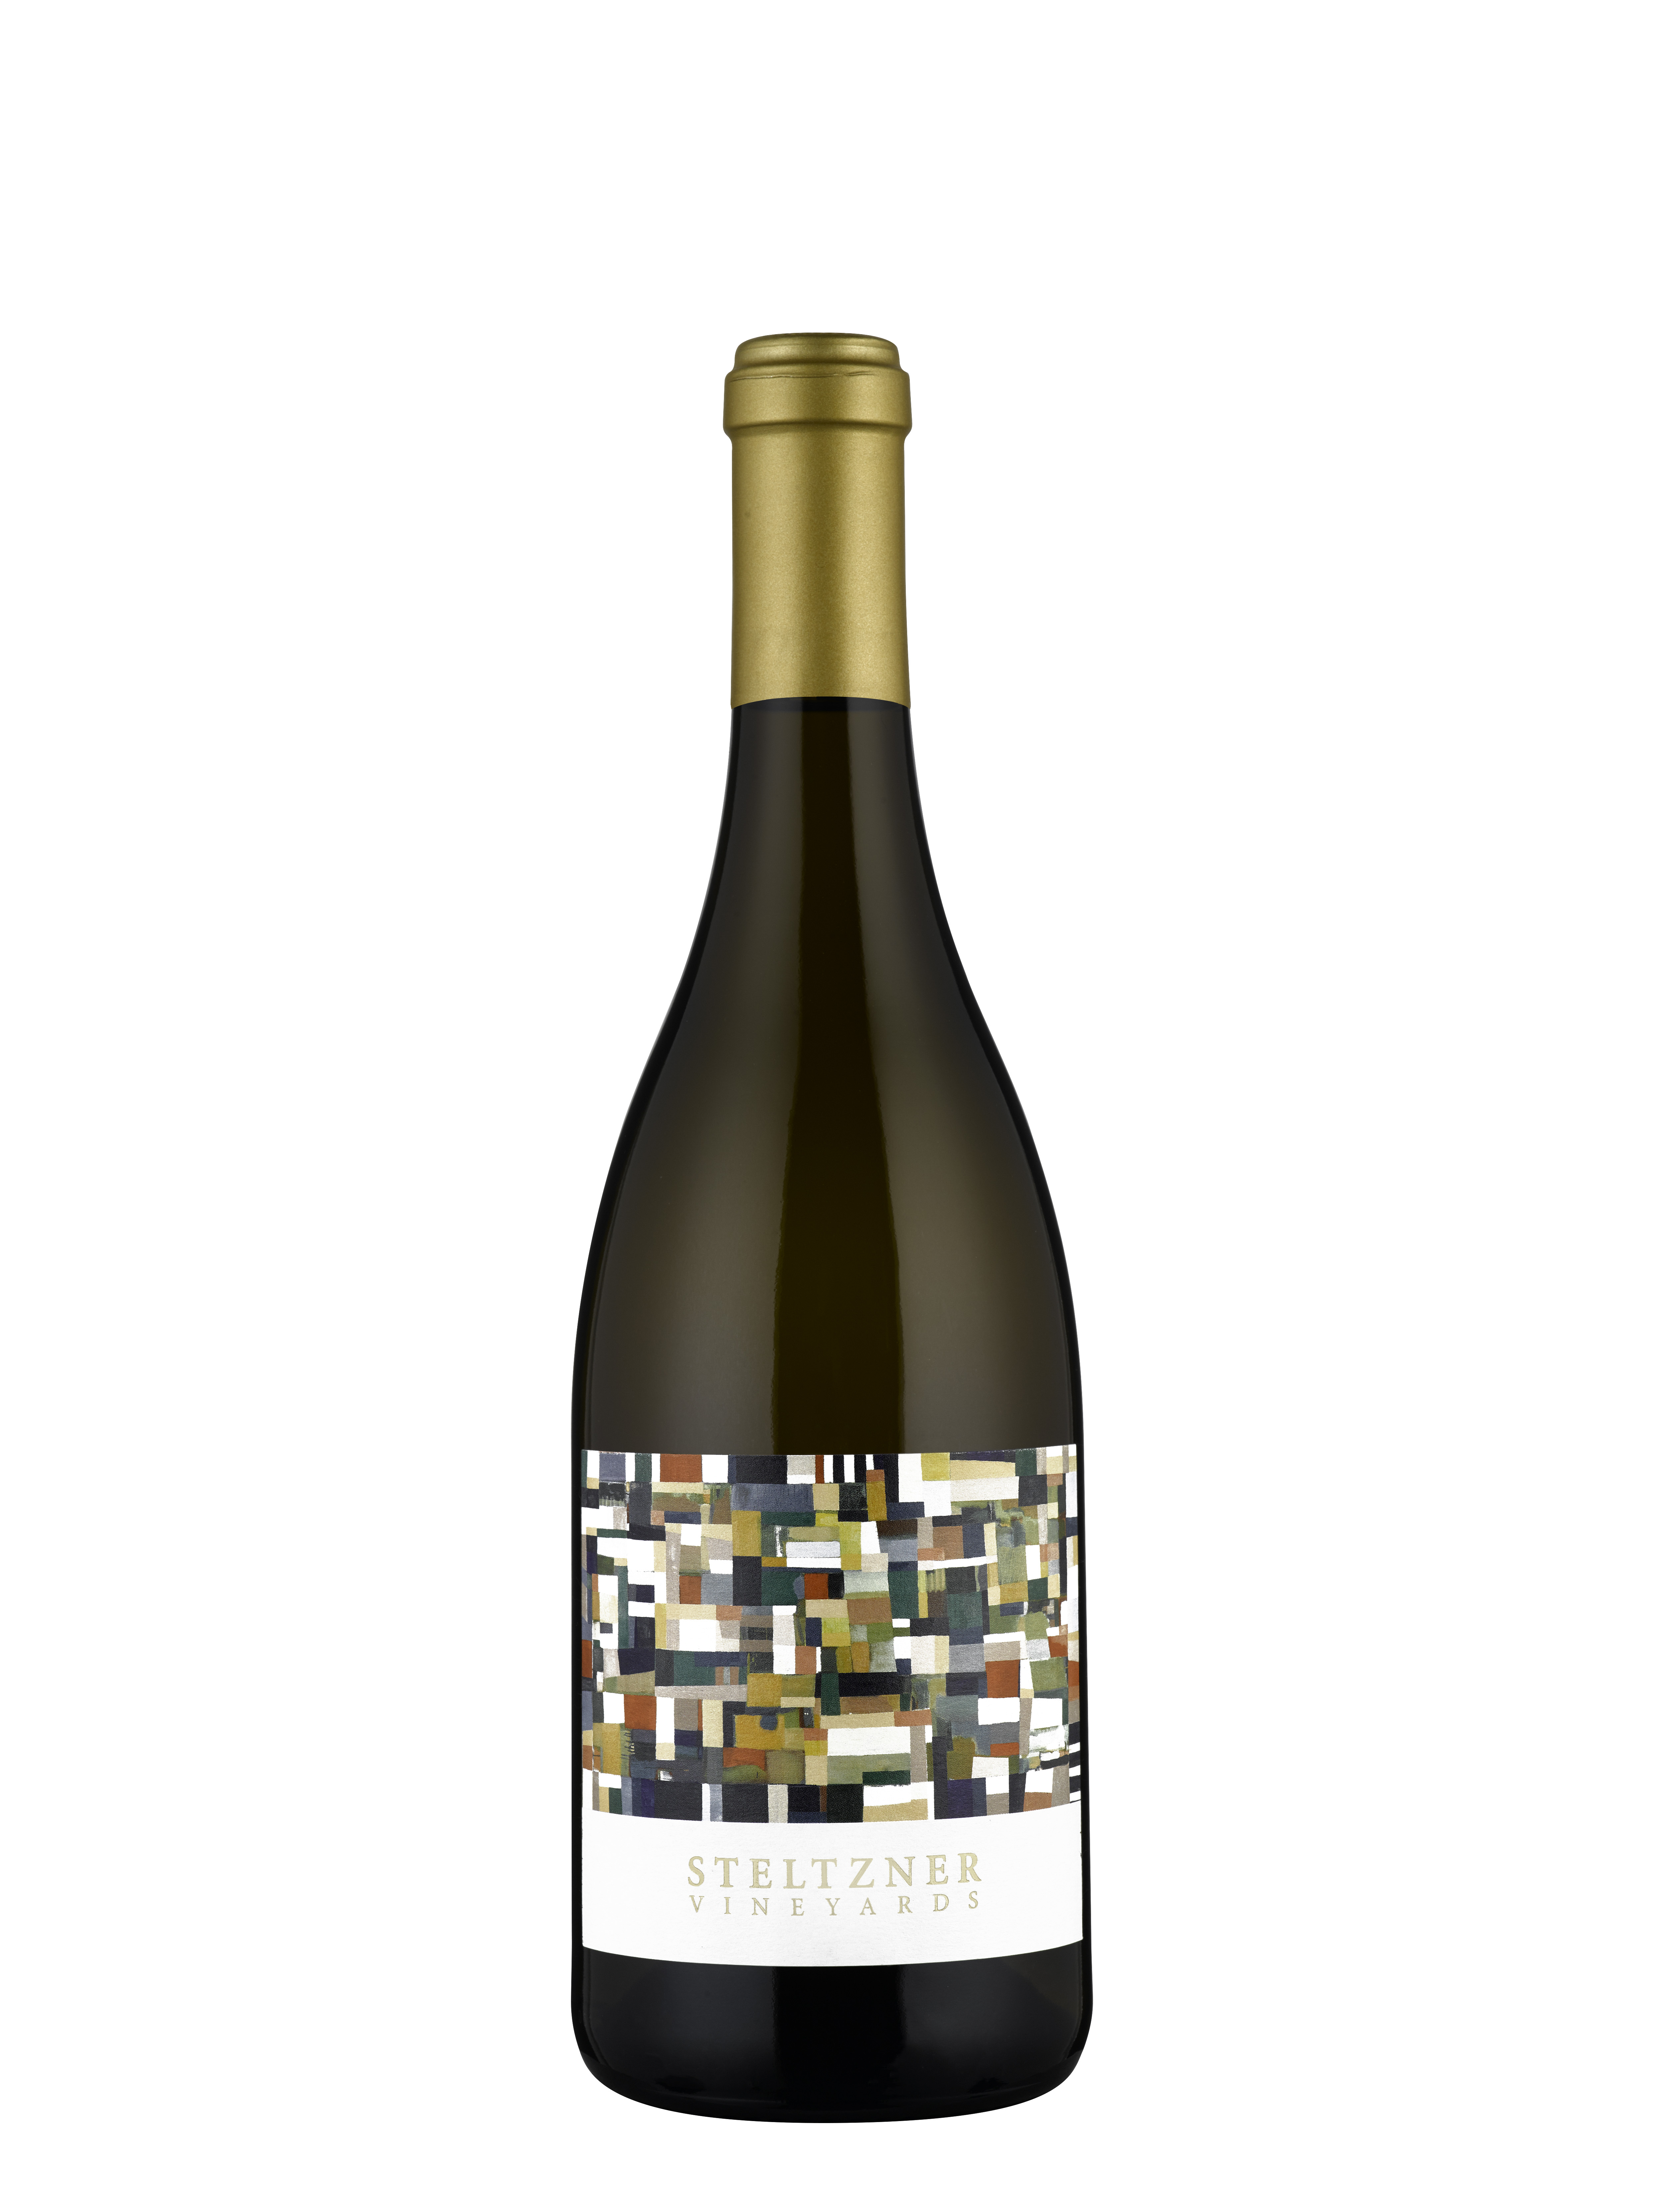 Product Image for 2020 Steltzner Vineyards Chardonnay, Sonoma Coast